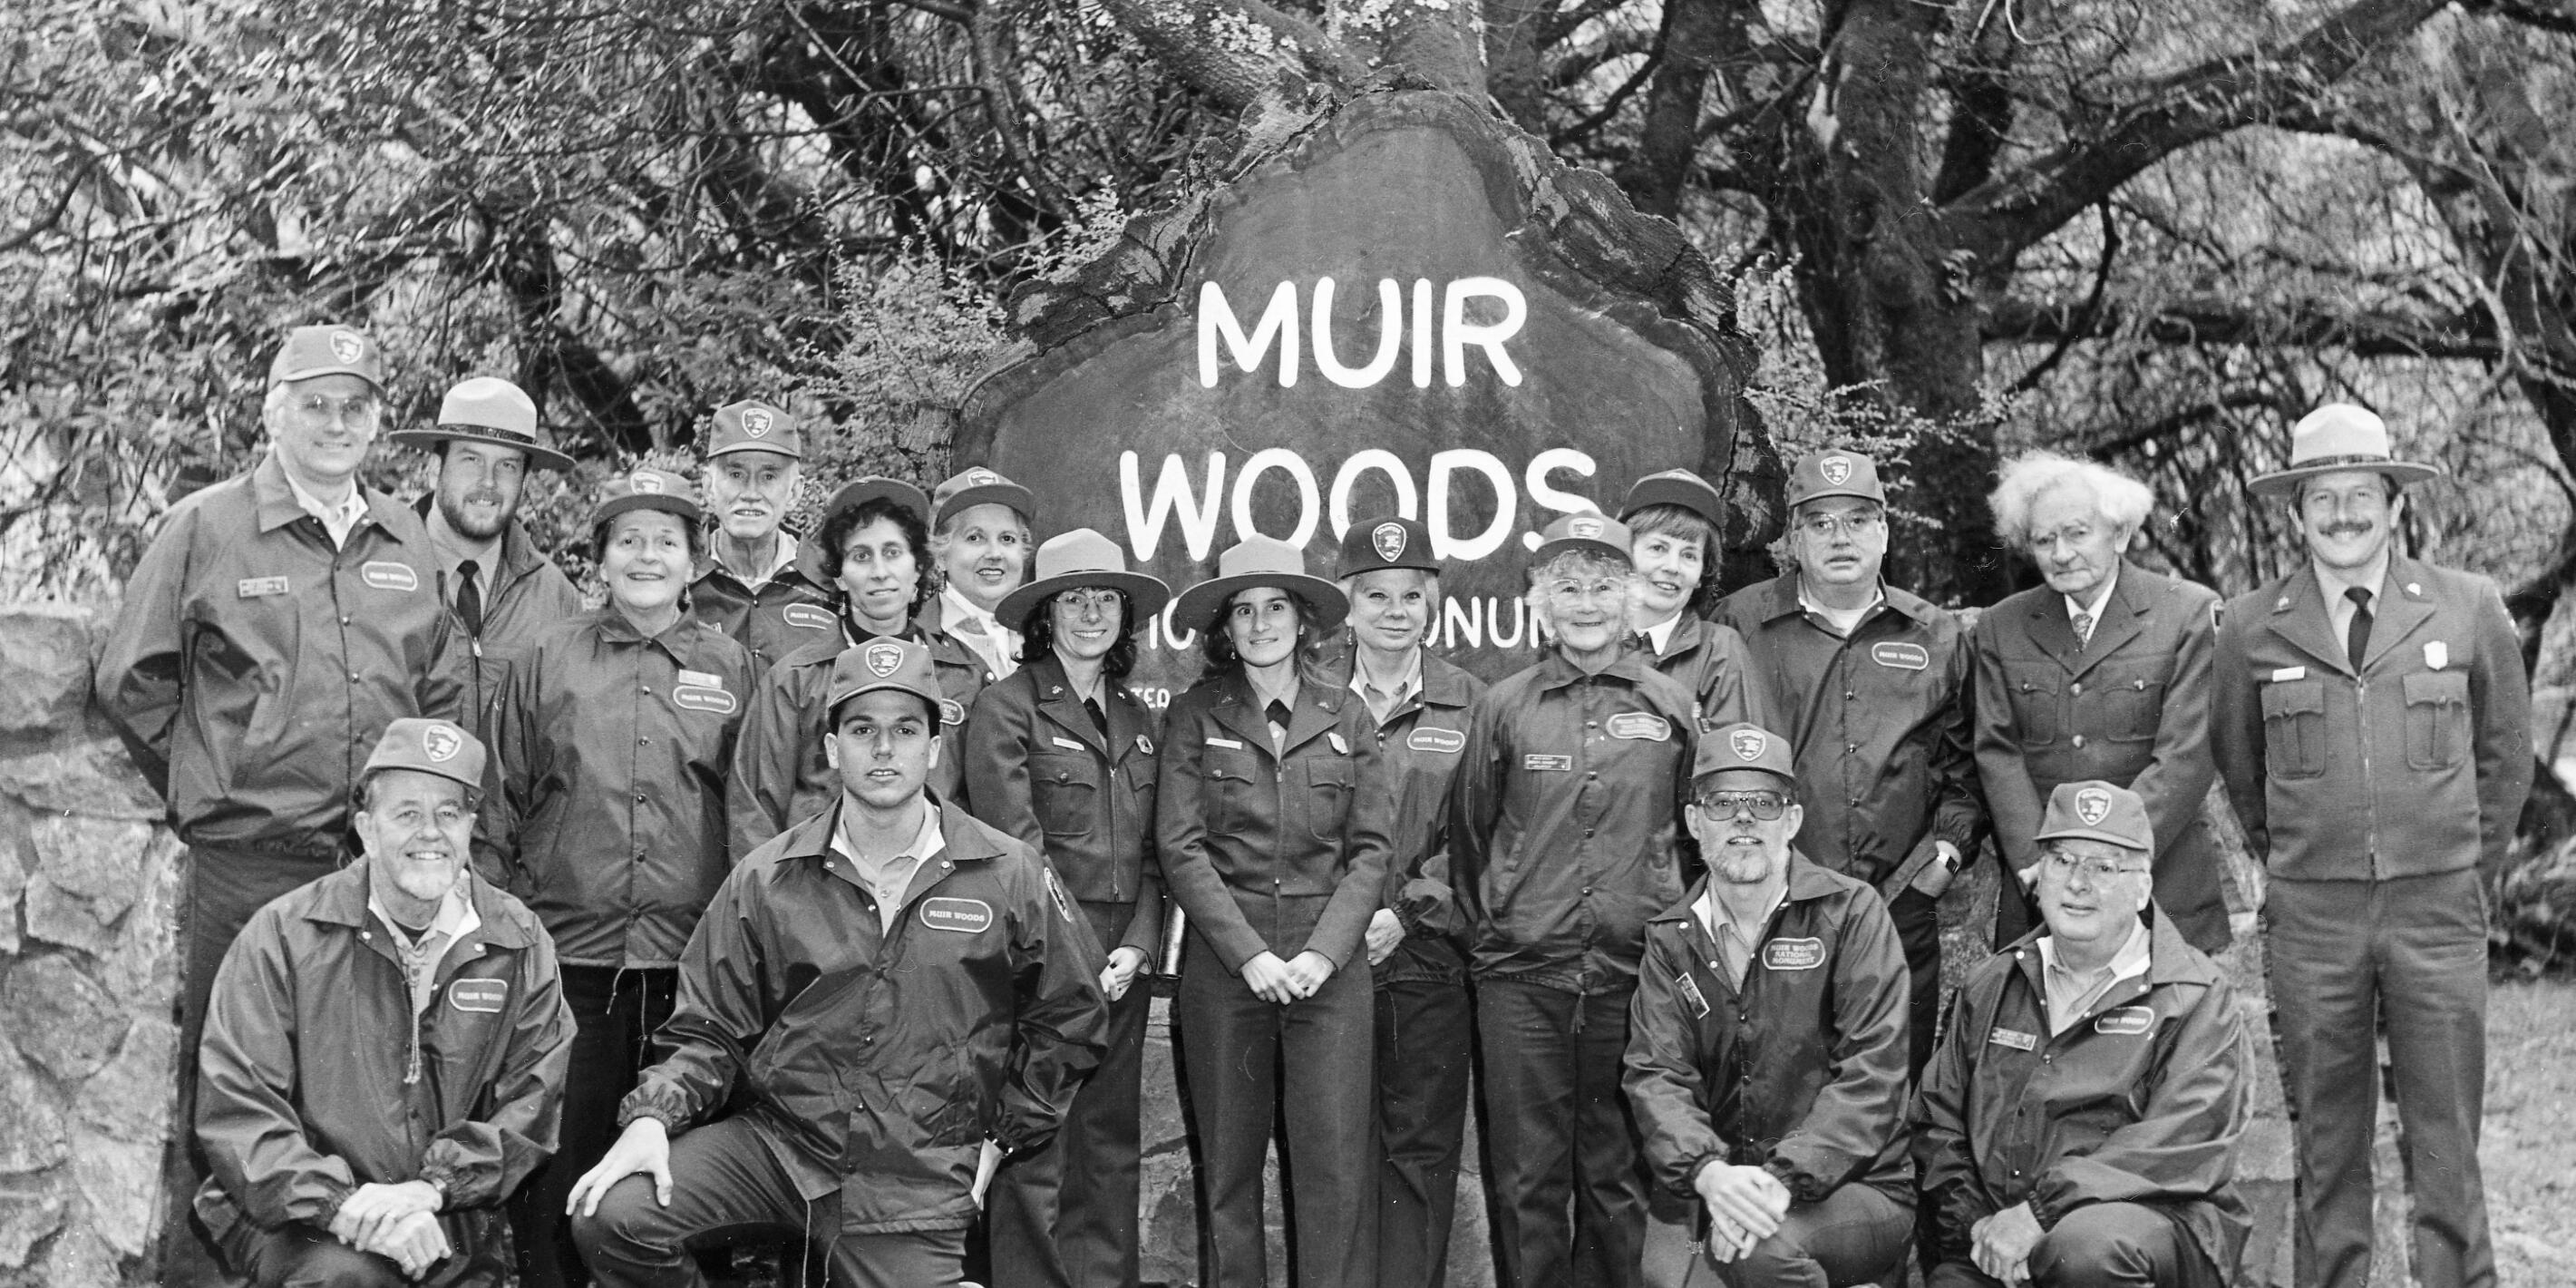 Rangers graduate in Muir Woods